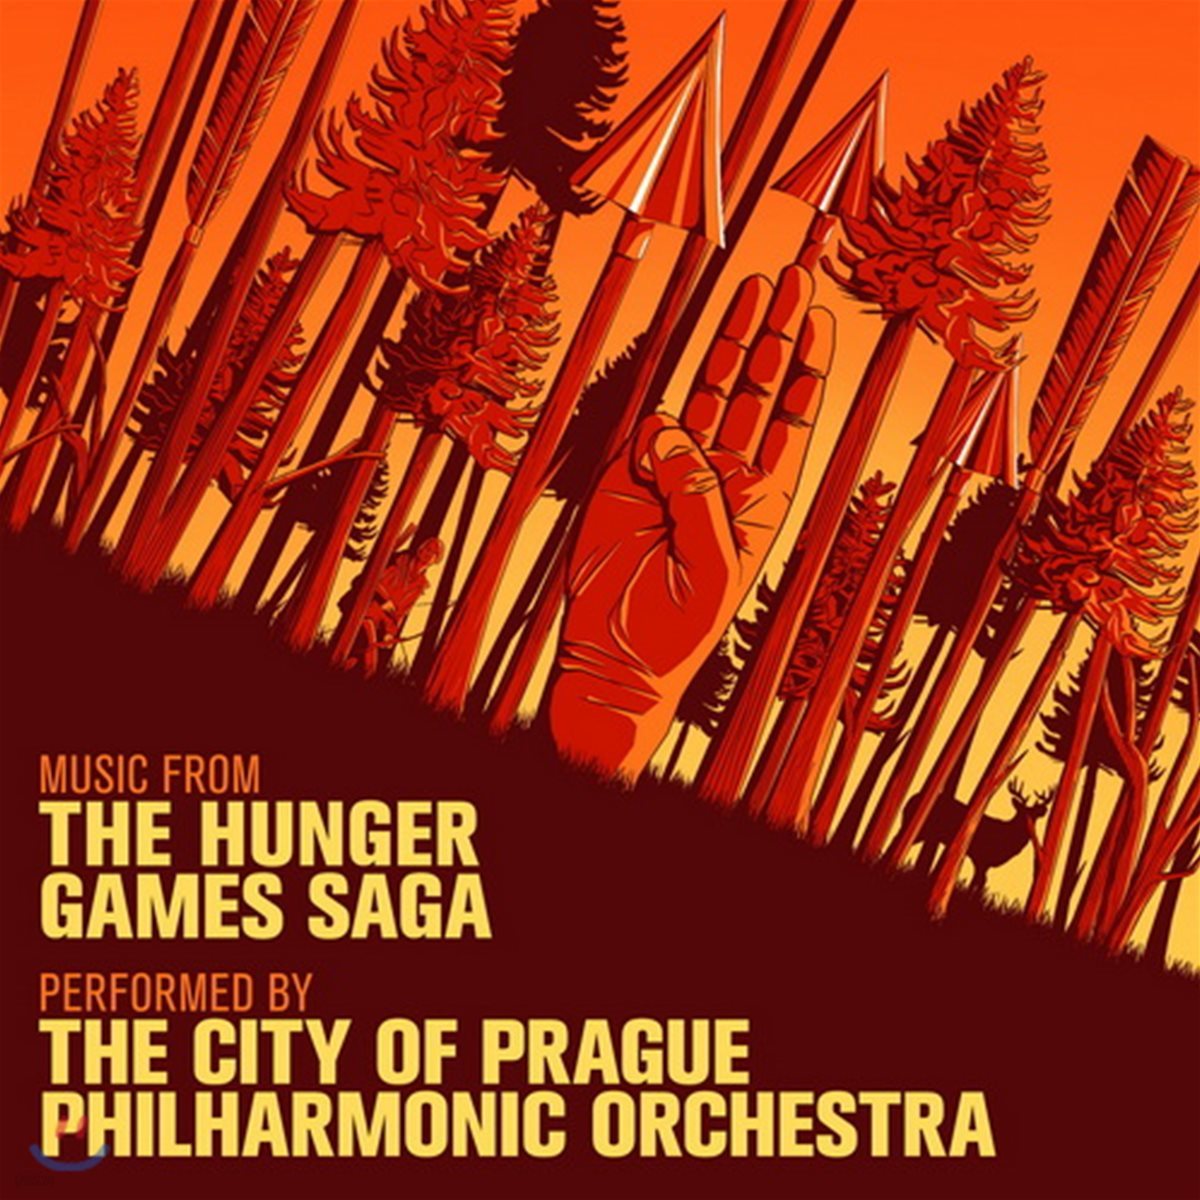 헝거게임 시리즈 영화음악 베스트 (Music From The Hunger Games Saga OST - Performed by The City Of Prague Philharmonic Orchestra)